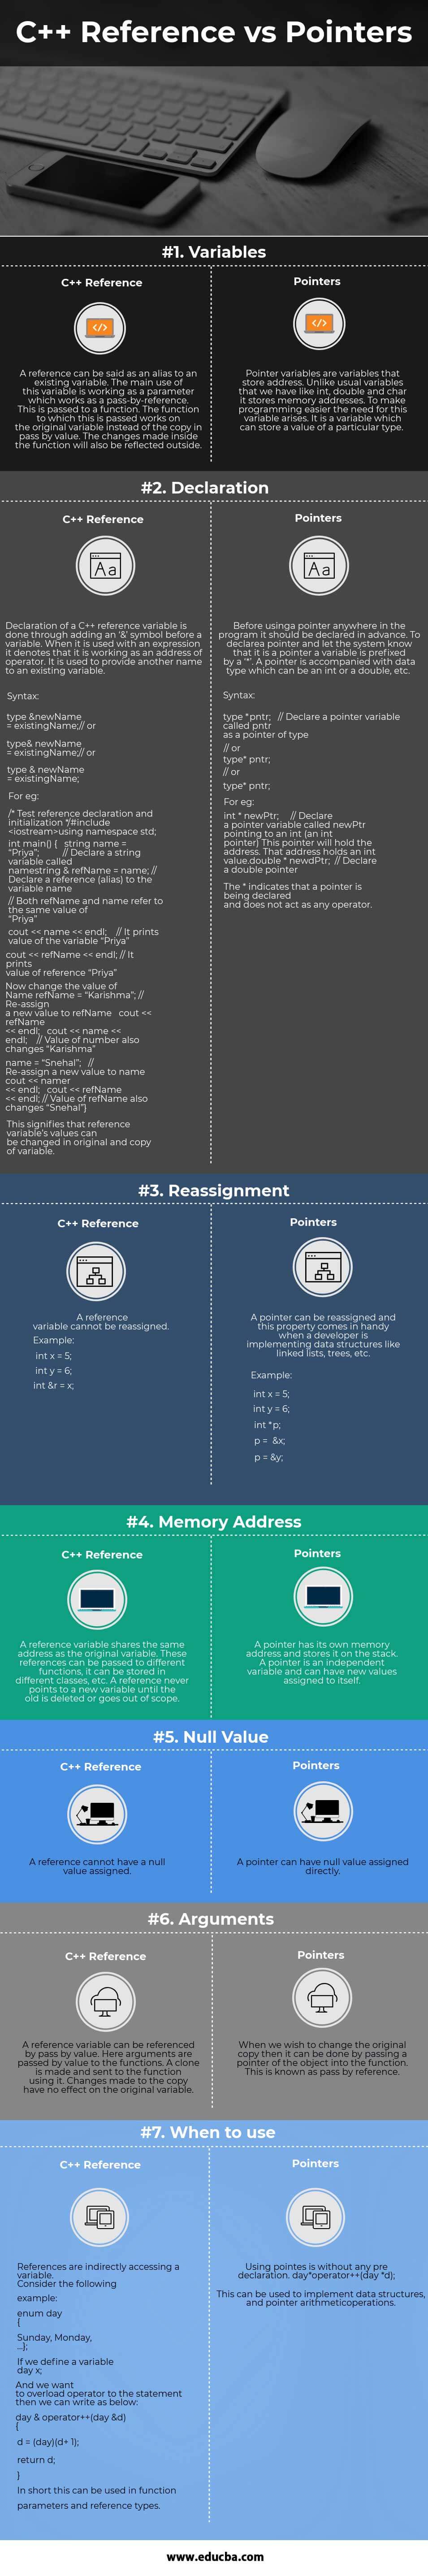 सी ++ रेफरेन्स बनाम पॉइंटर (इन्फोग्राफिक्स)